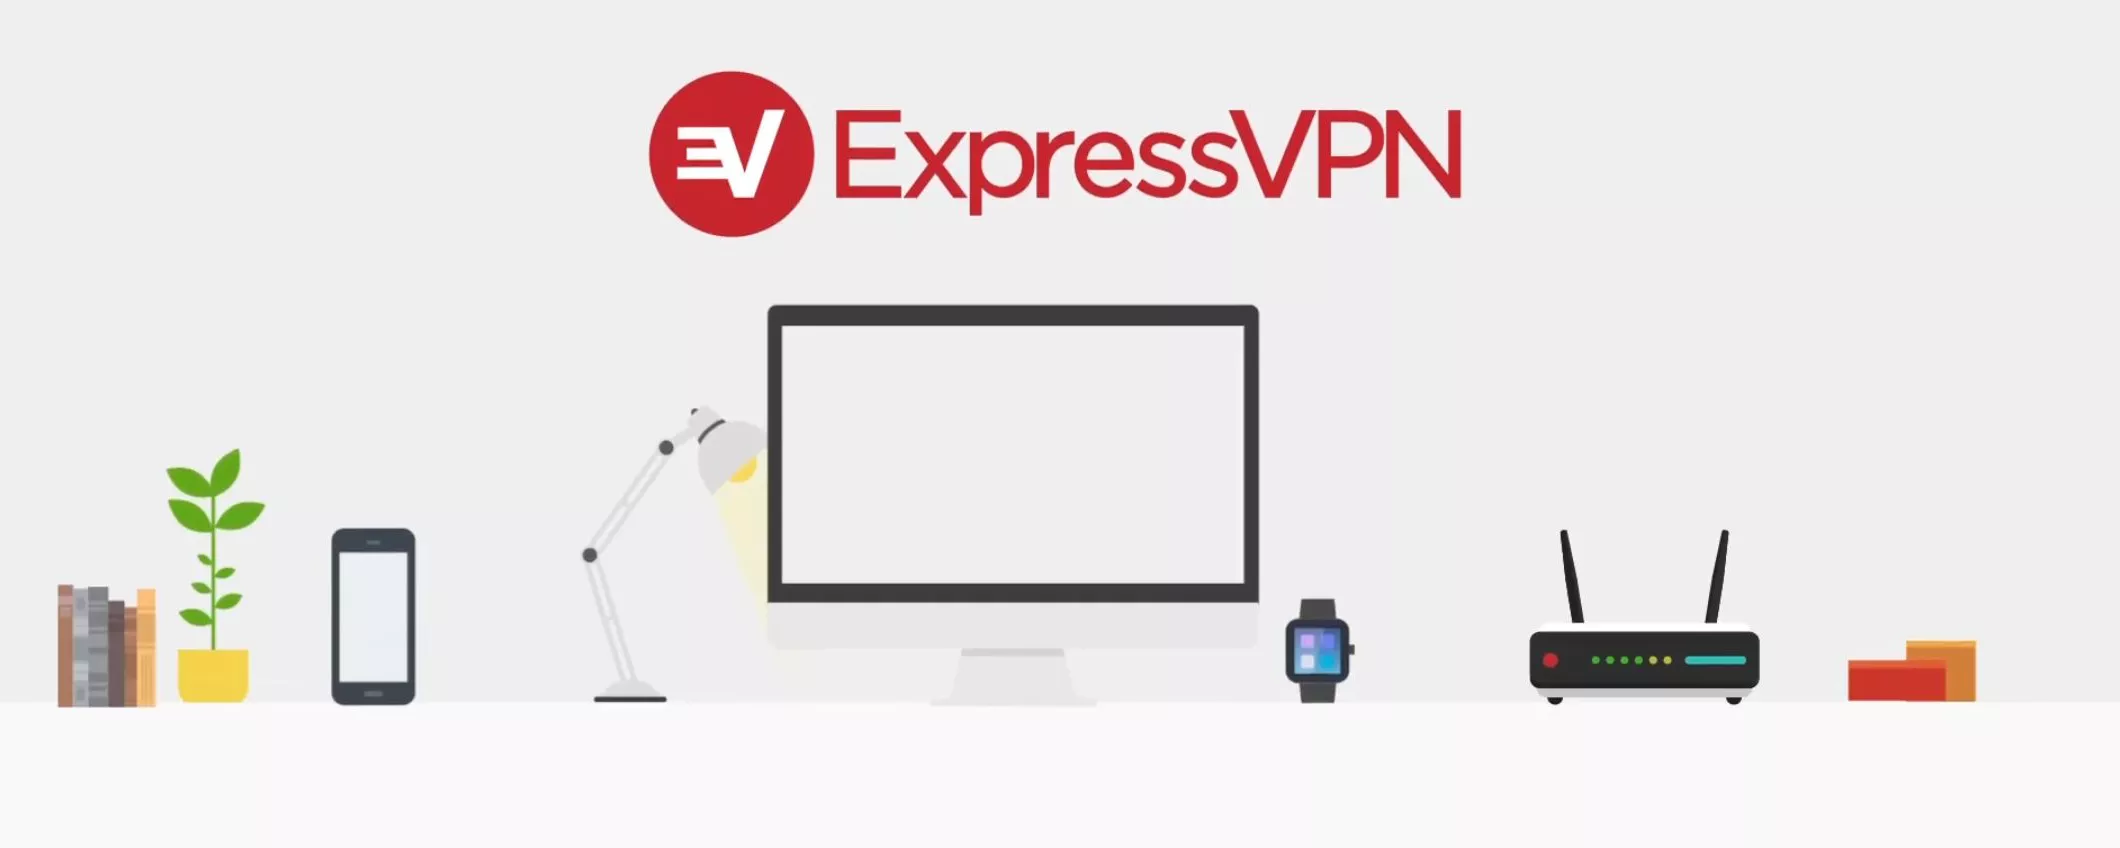 ExpressVPN ti protegge dai virus nascosti nelle applicazioni